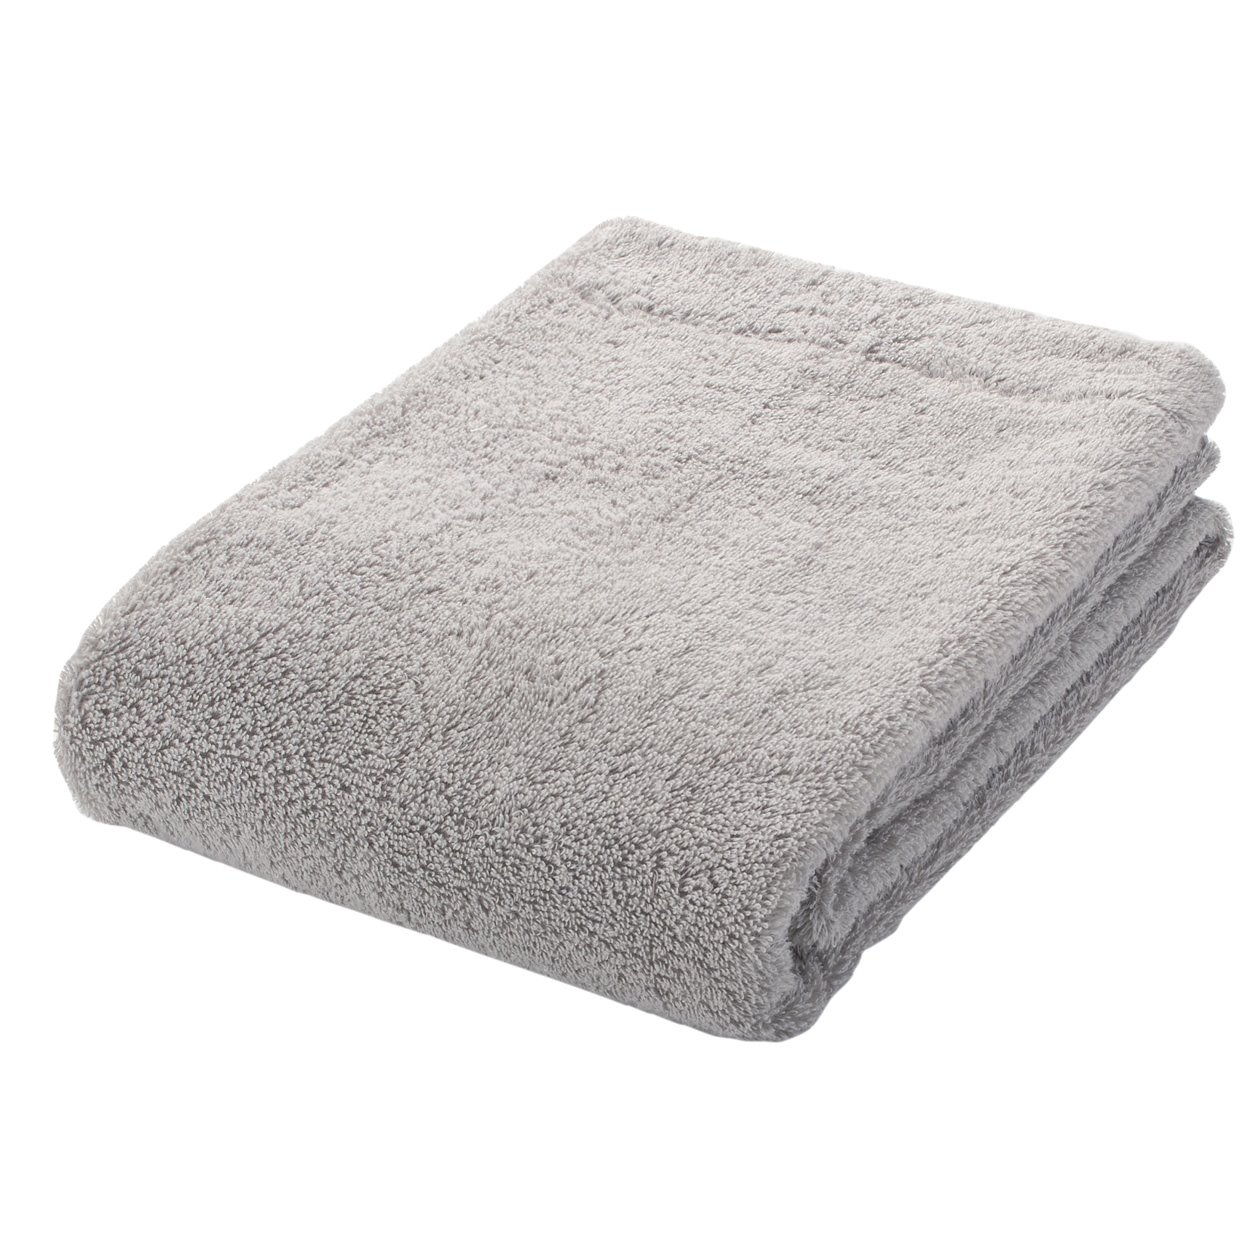 Las toallas nunca sobran, especialmente en verano, cuando las duchas son más frecuentes. 